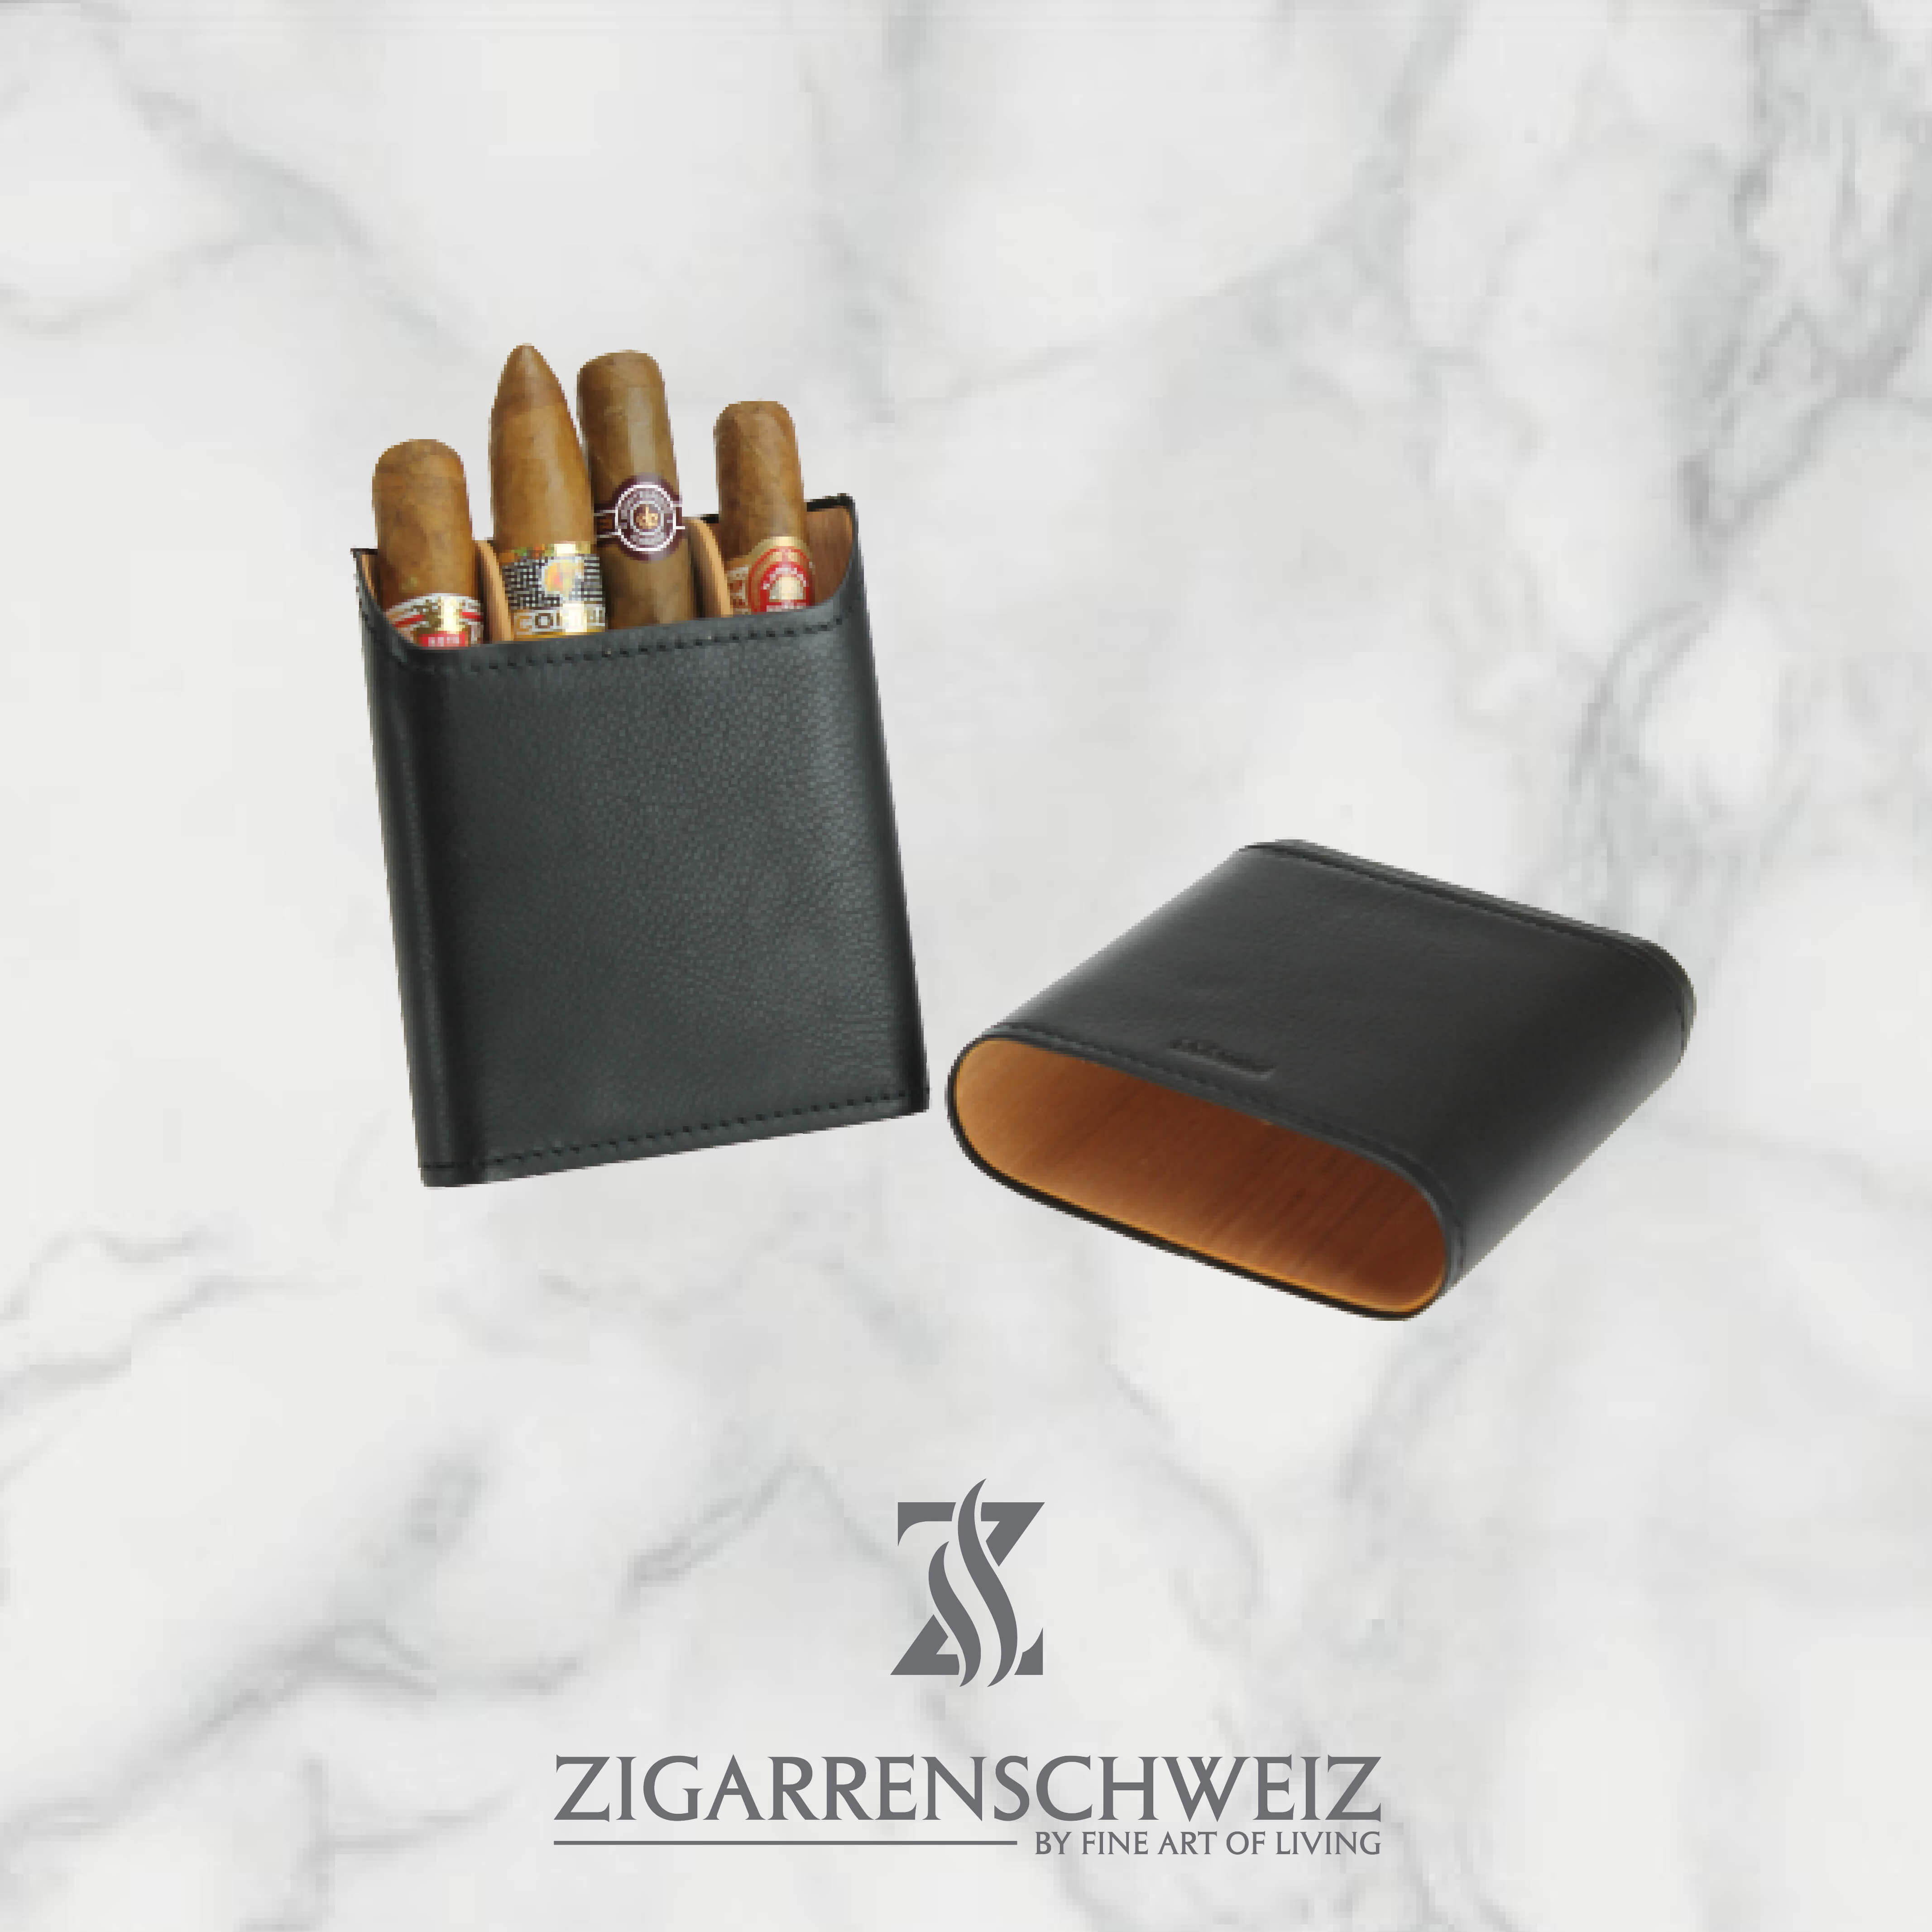 Adorini Zigarrenetui, Material: Echtleder, Kapazität: 3-5 Zigarren, Farbe: schwarz, geöffnet mit Unterteilern